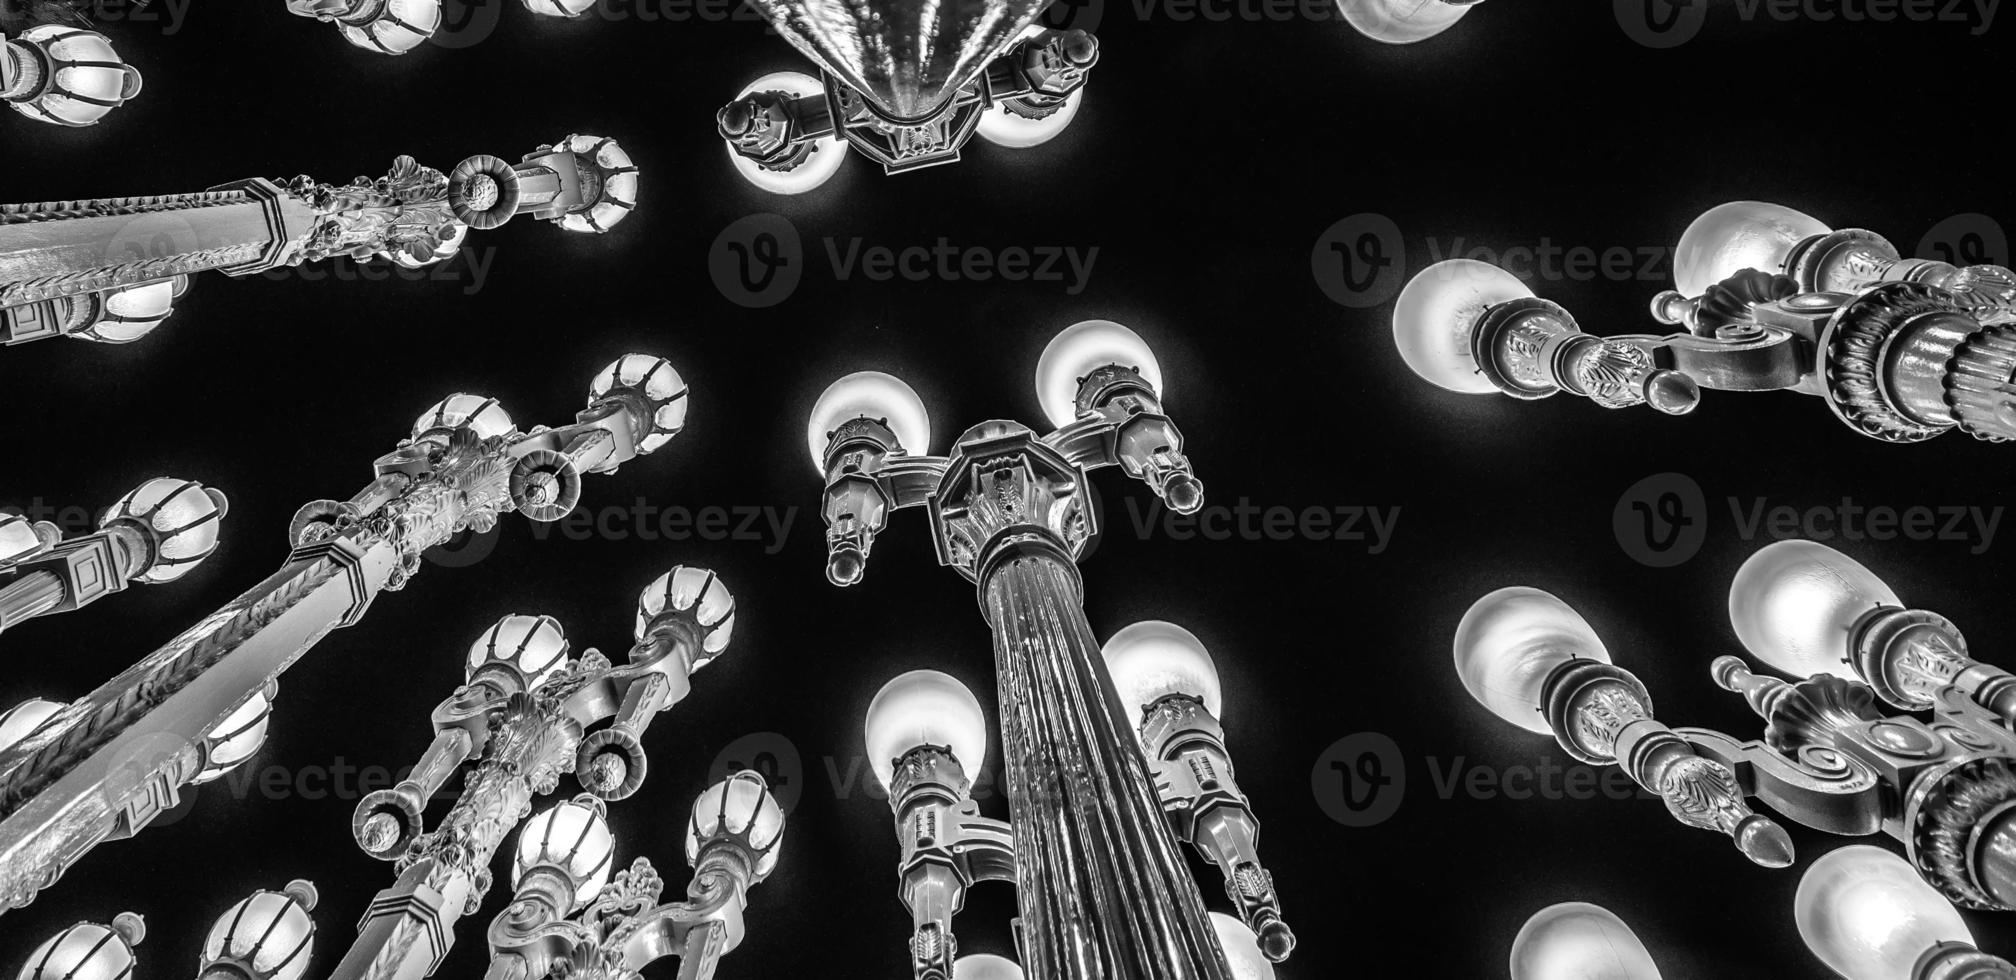 Escultura de luz urbana en lacma de noche los angeles california foto